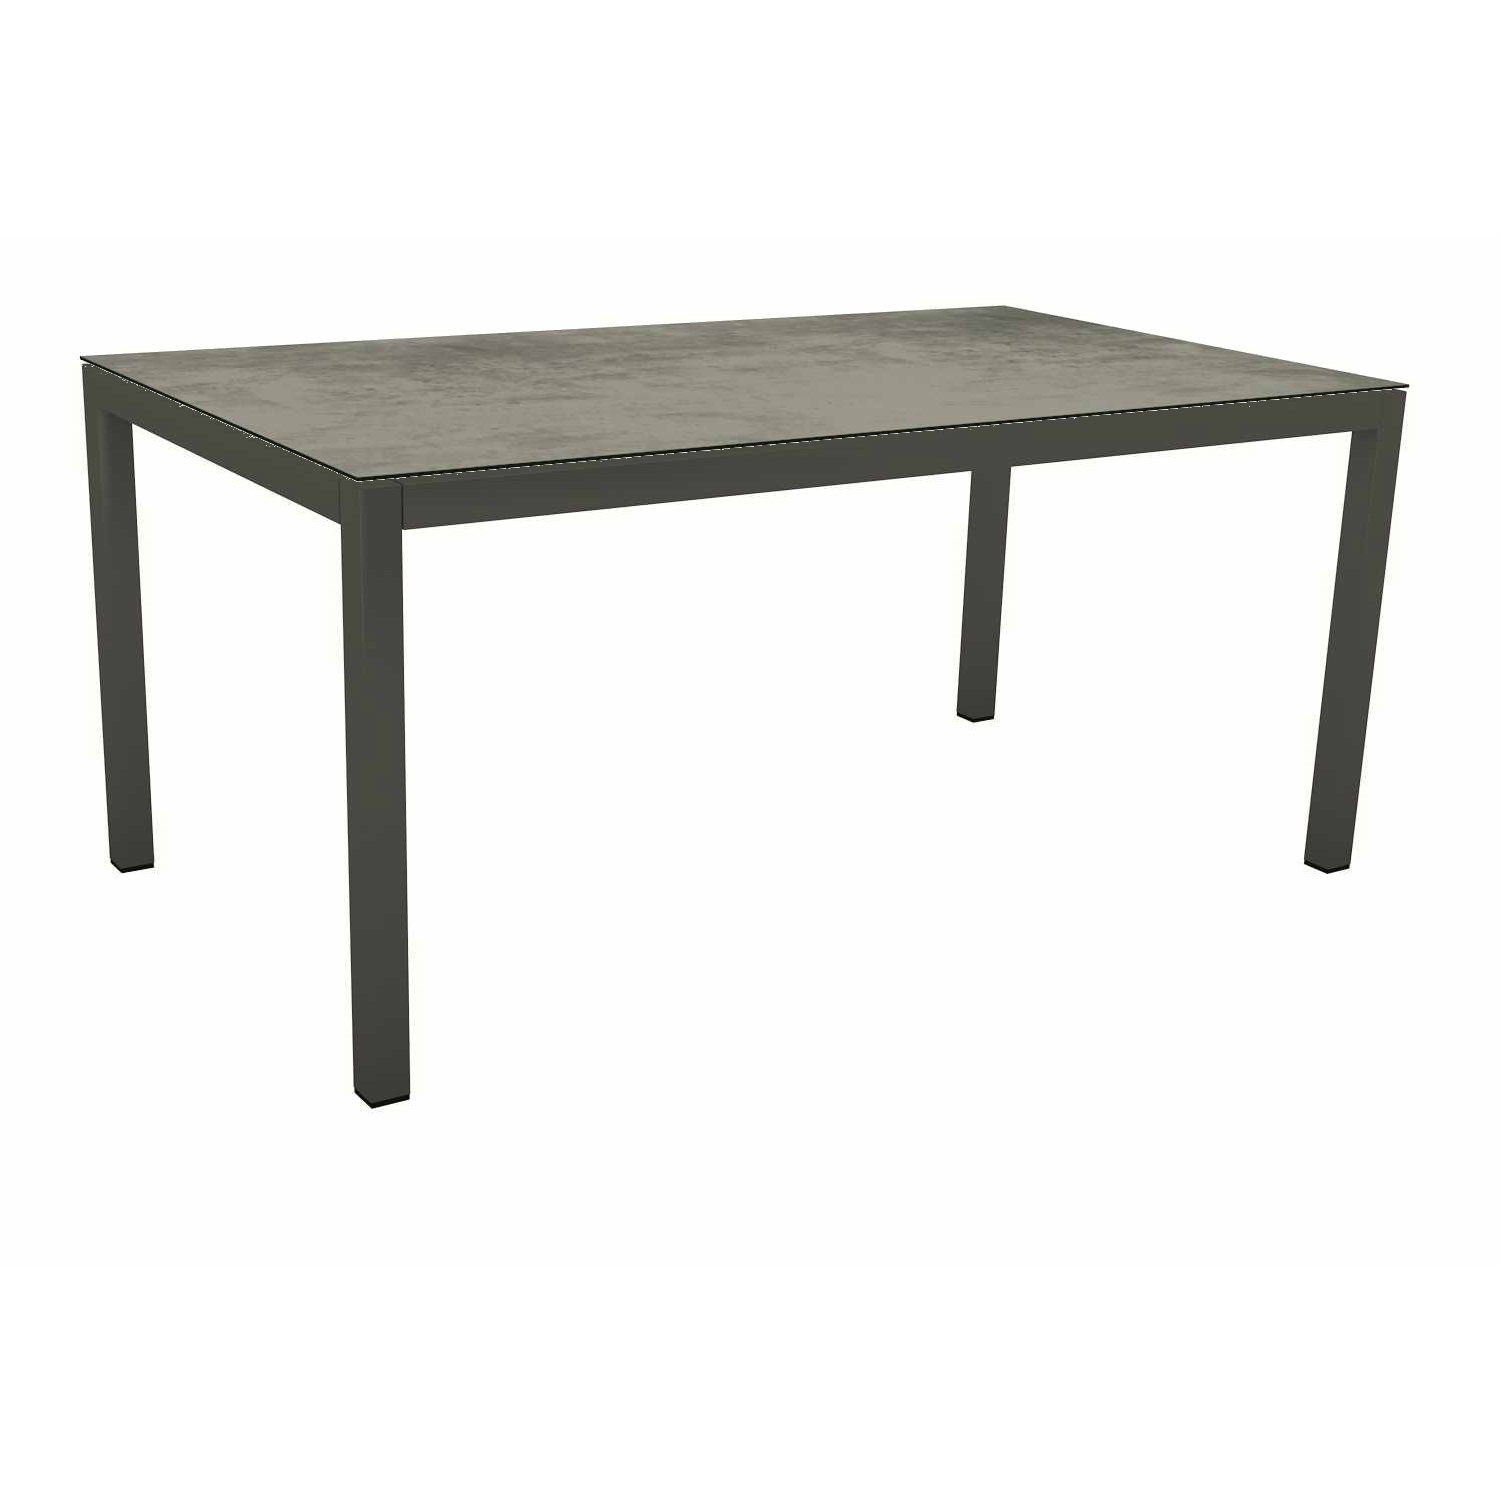 Stern Tischsystem Gartentisch, Gestell Aluminium anthrazit, Tischplatte HPL Zement, Maße: 160x90 cm